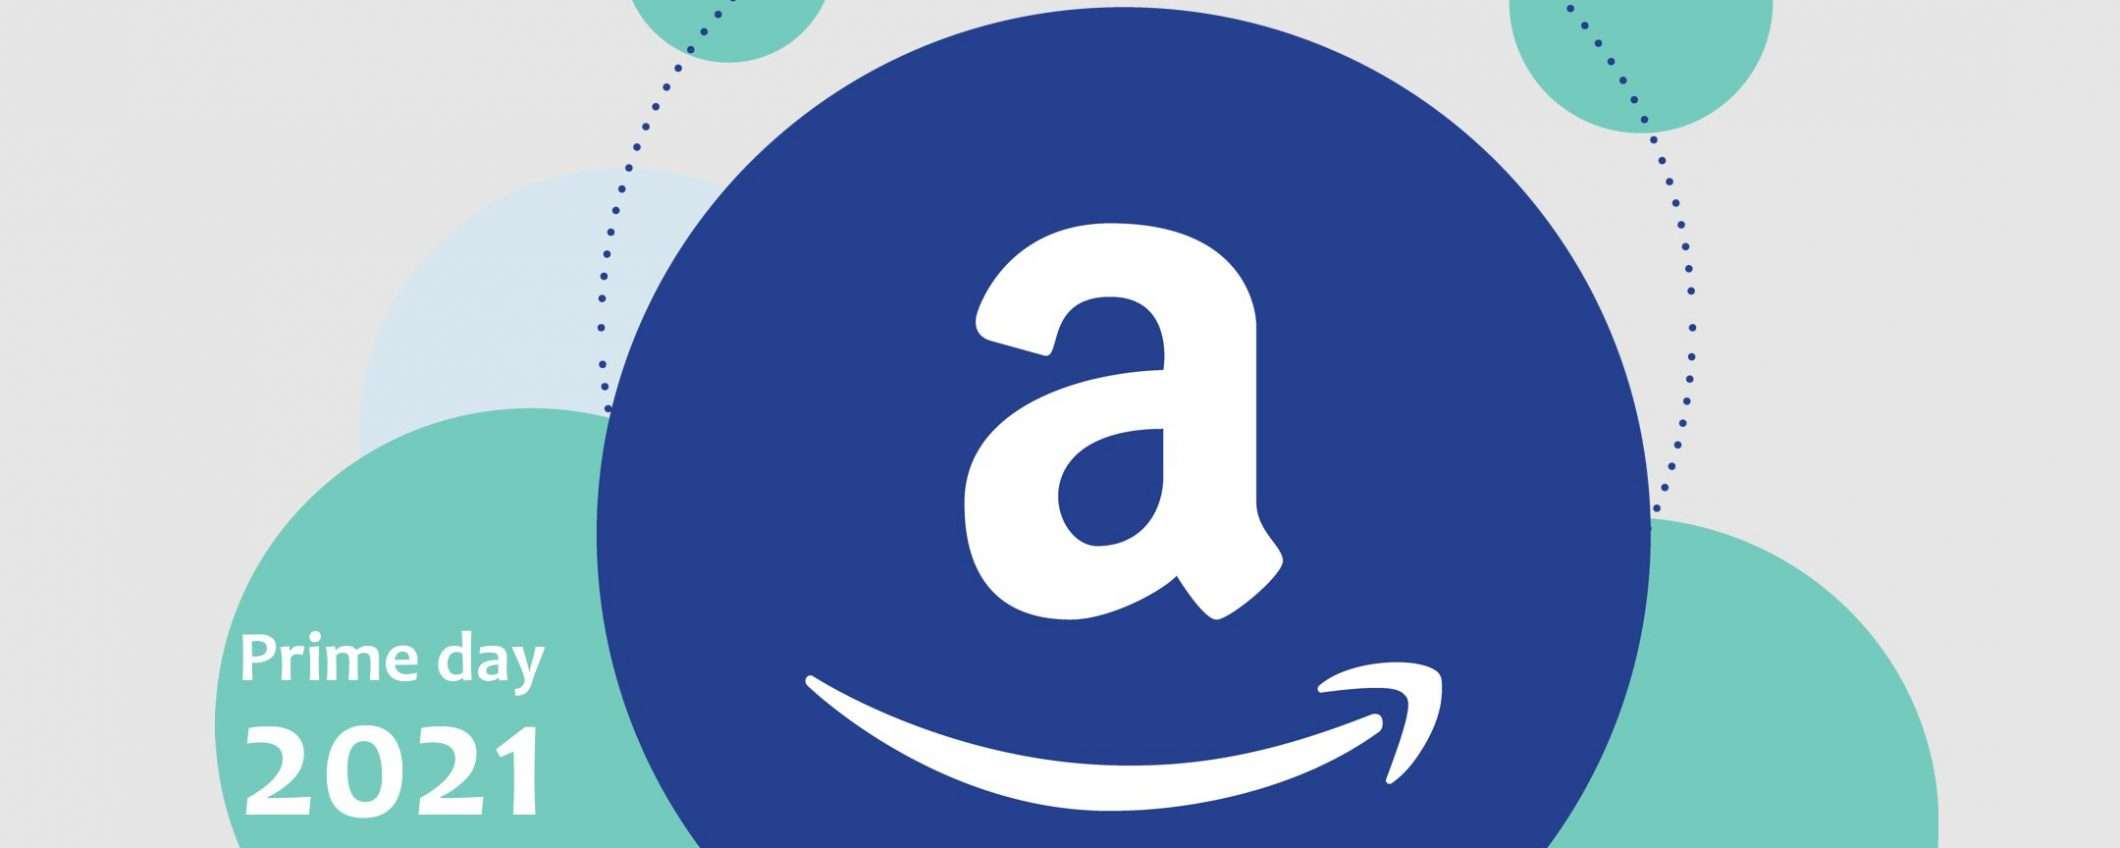 Amazon Prime Day: buono promozionale di 10 euro